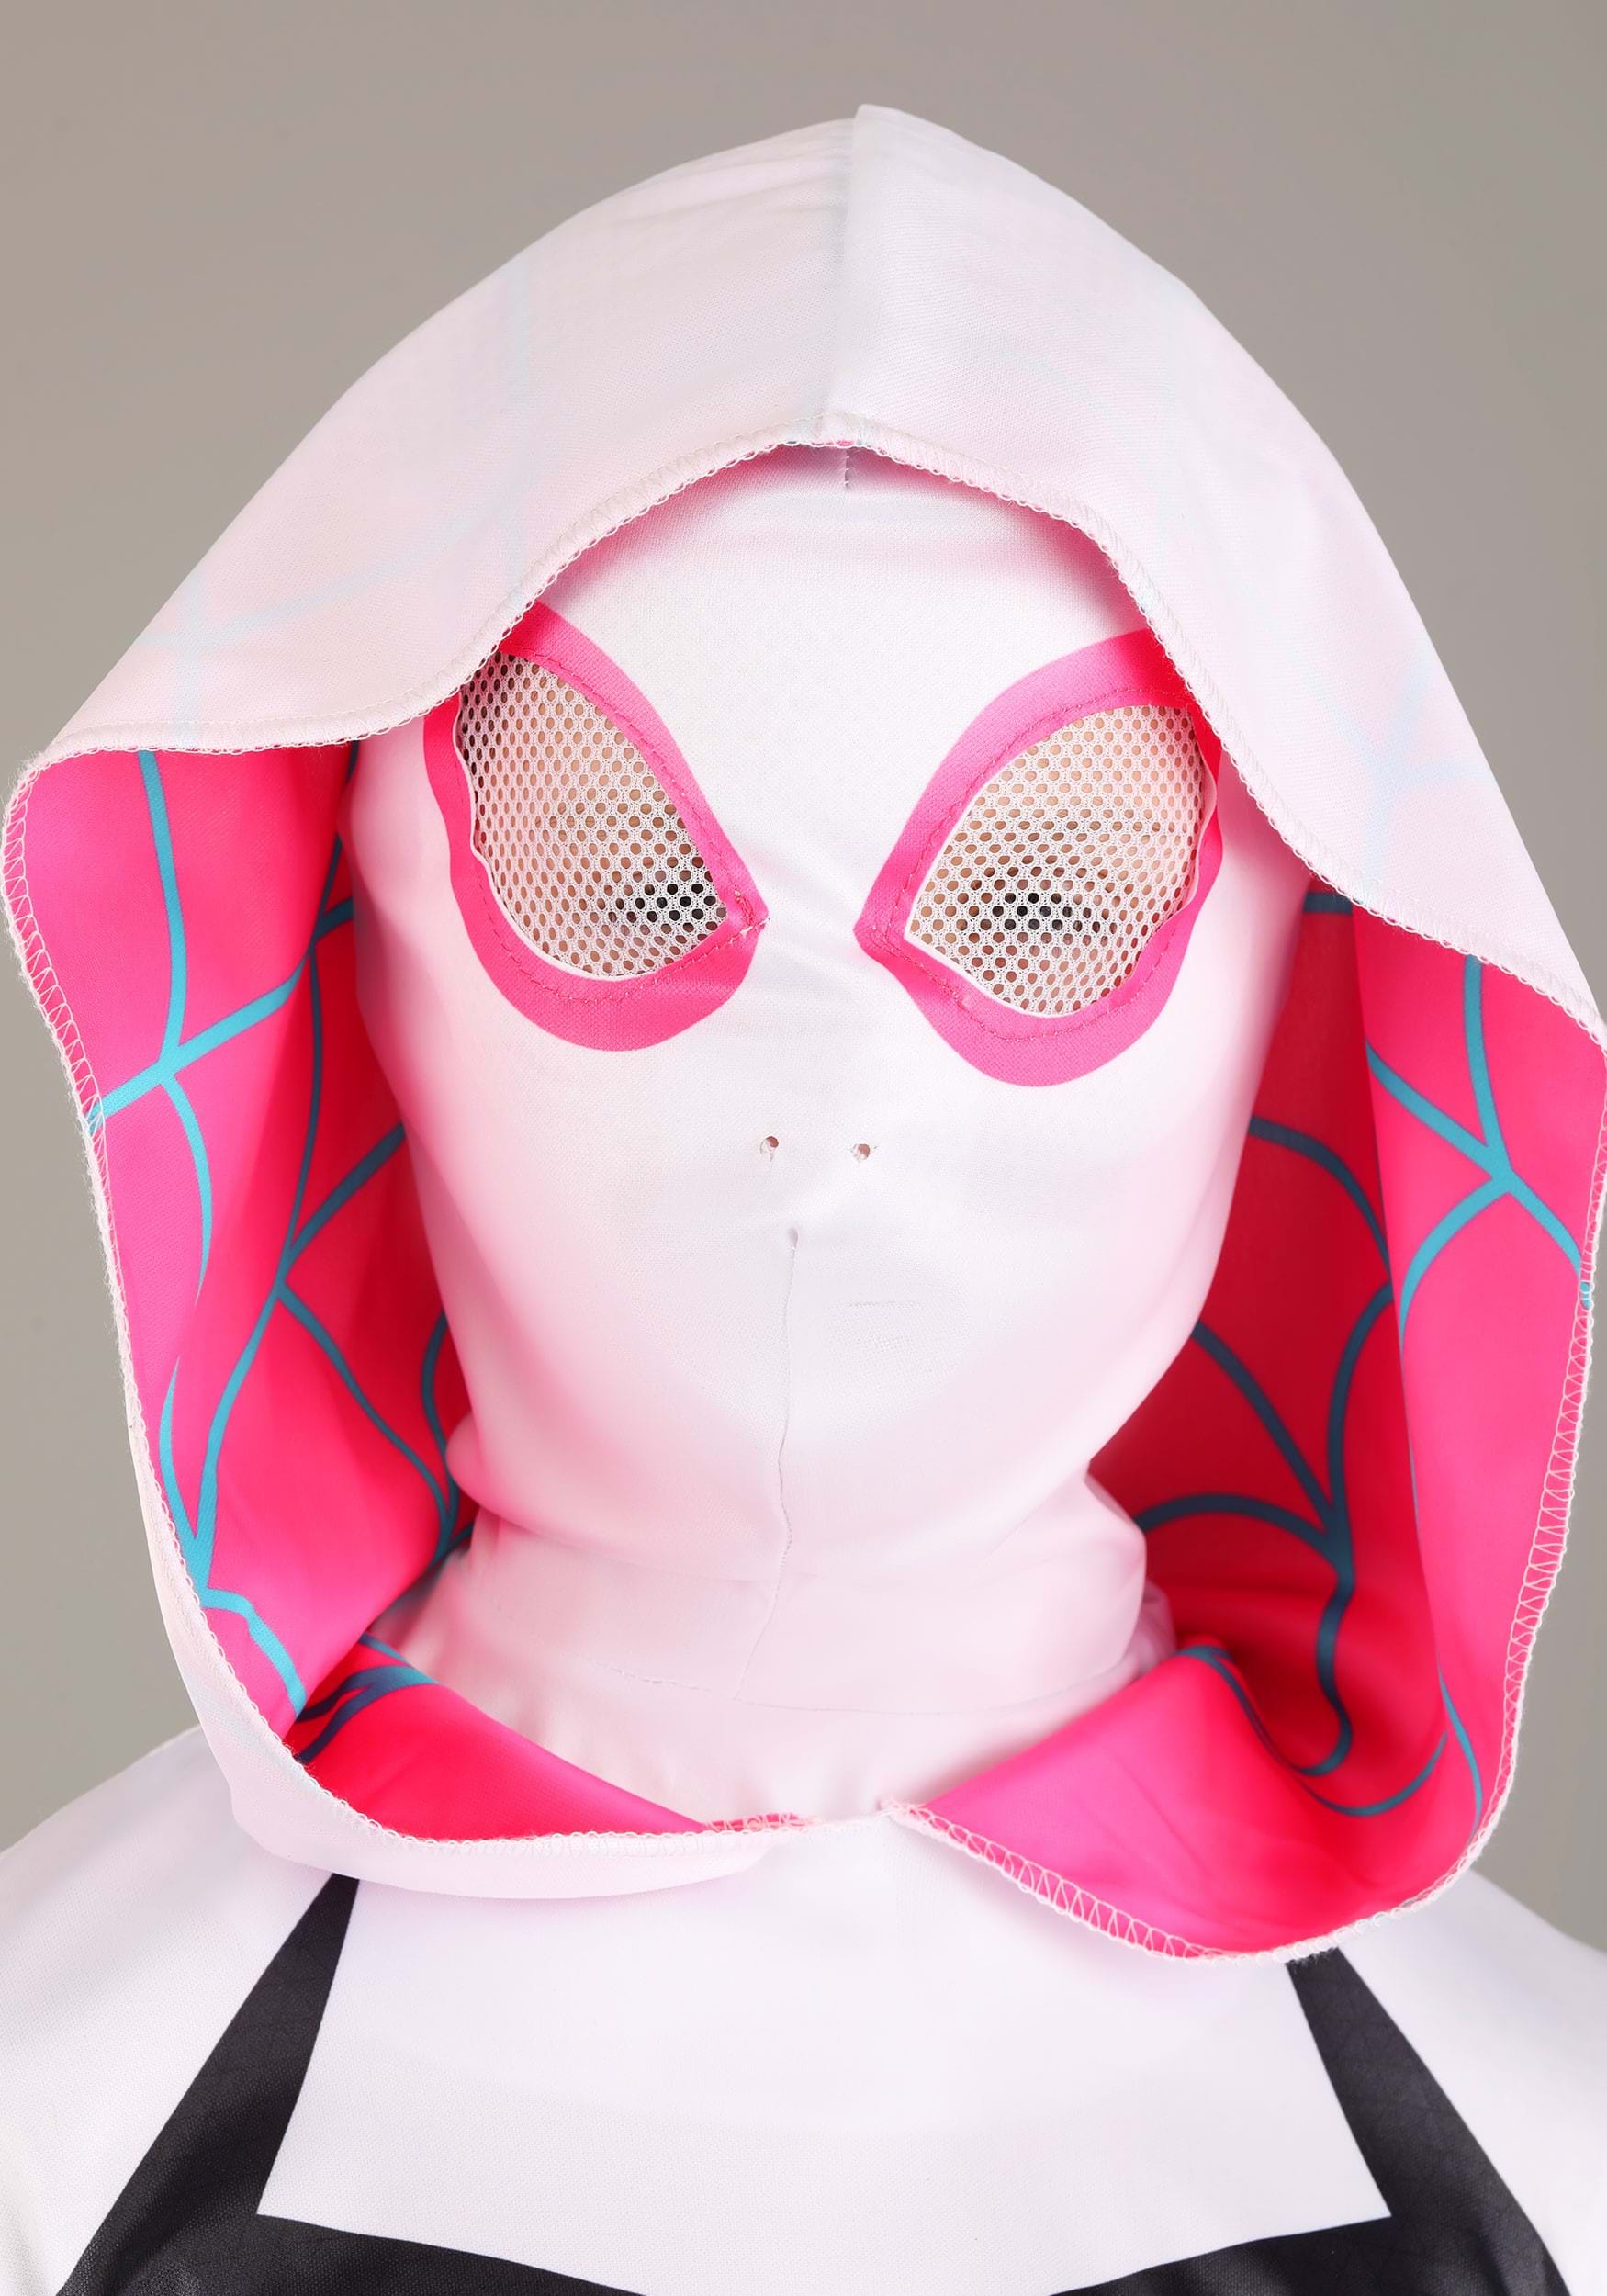 Spider-Gwen Kid's Costume